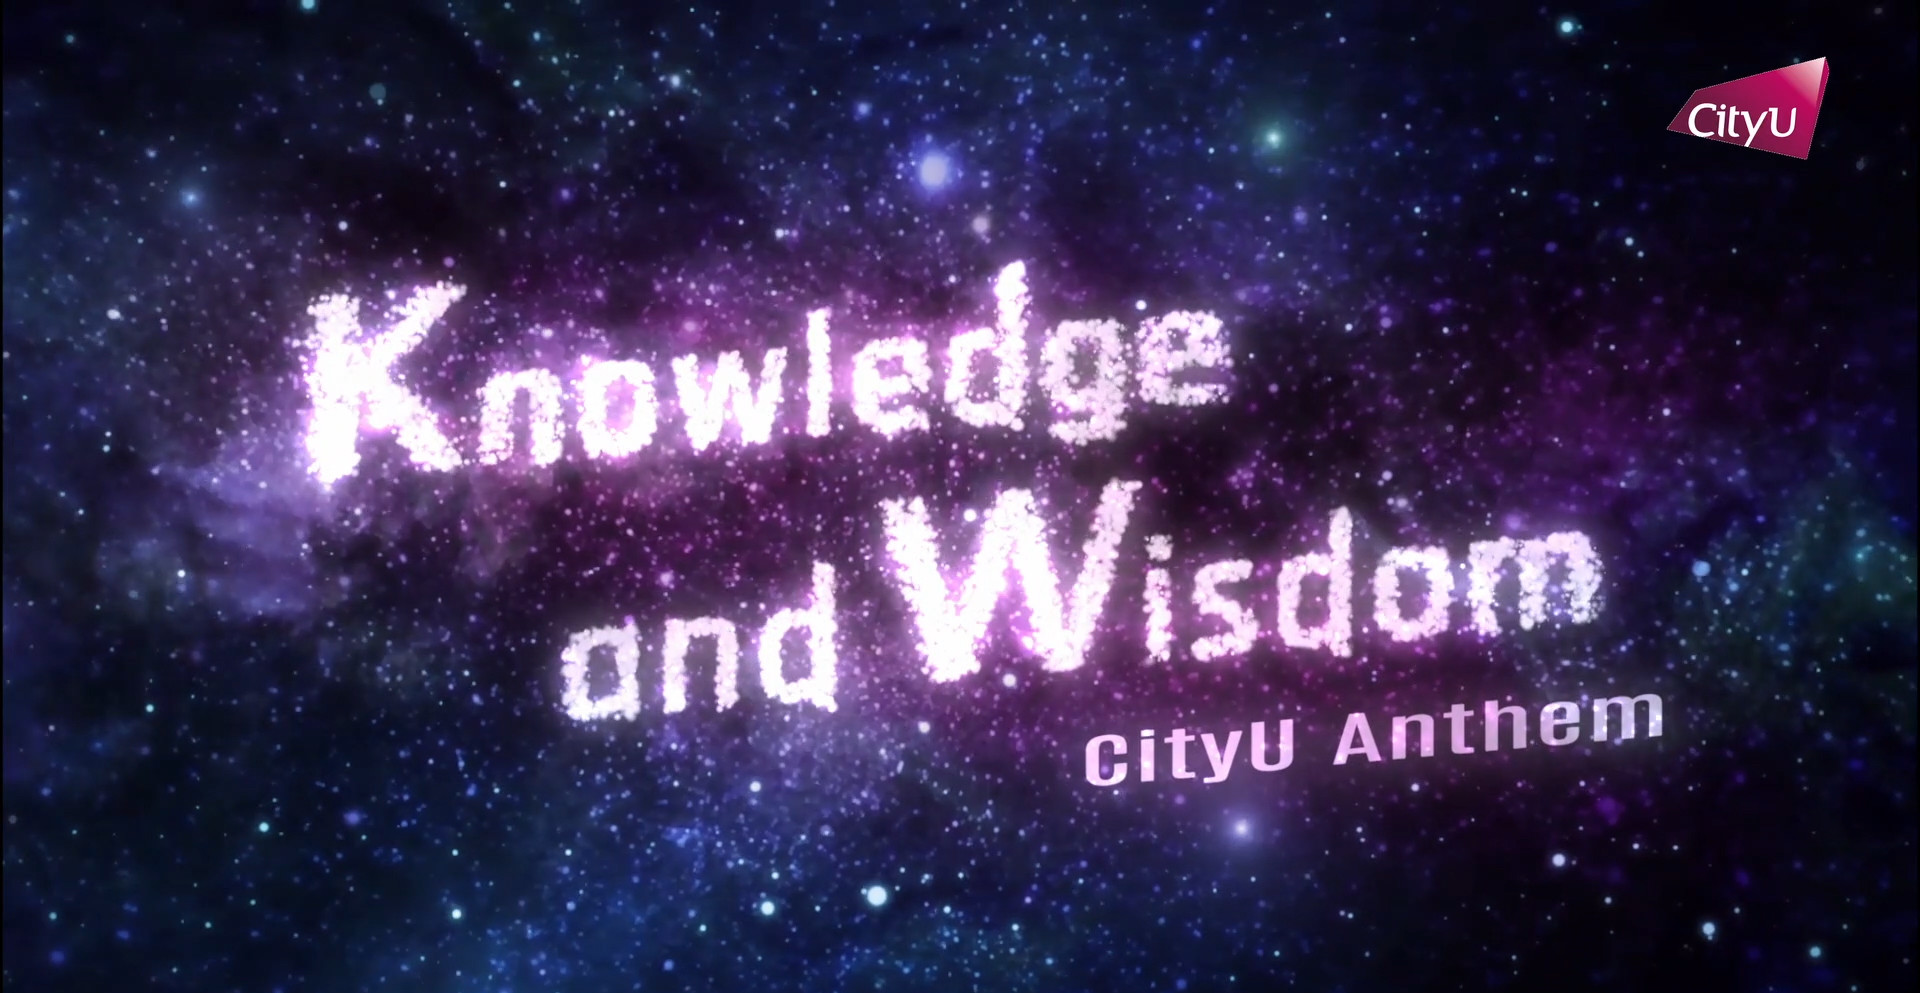 CityU Anthem: Knowledge and Wisdom